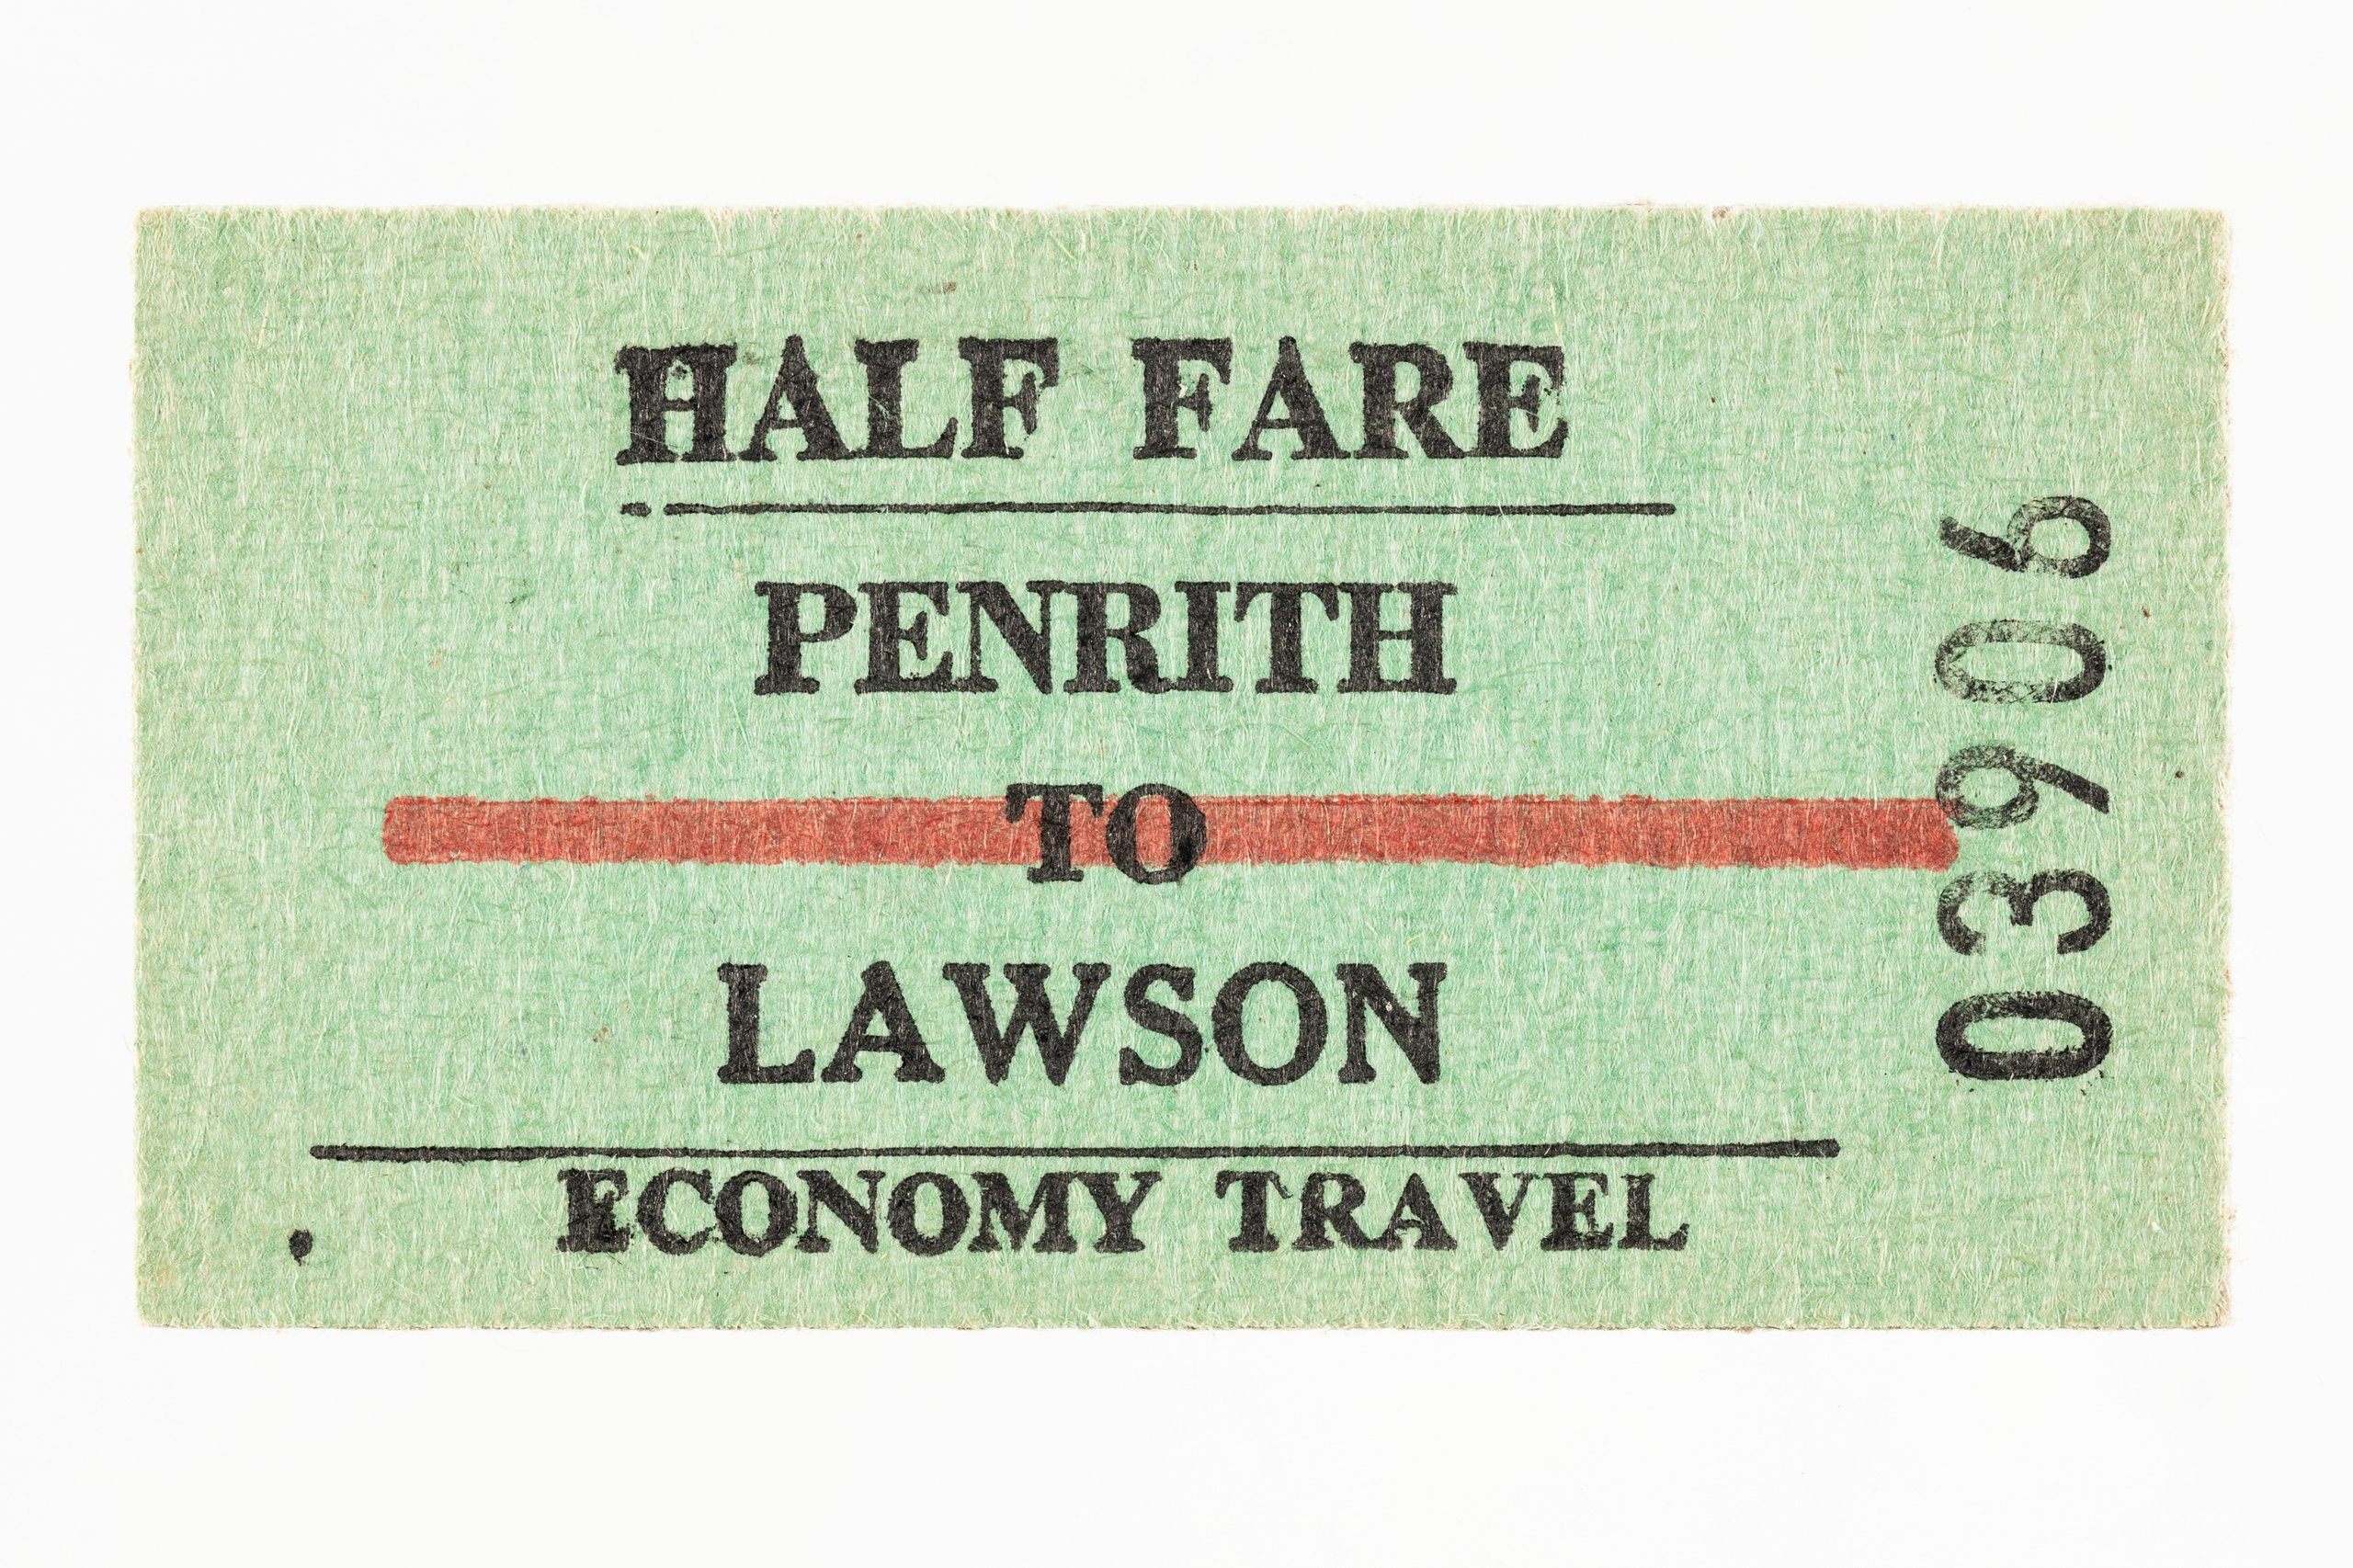 Railway ticket